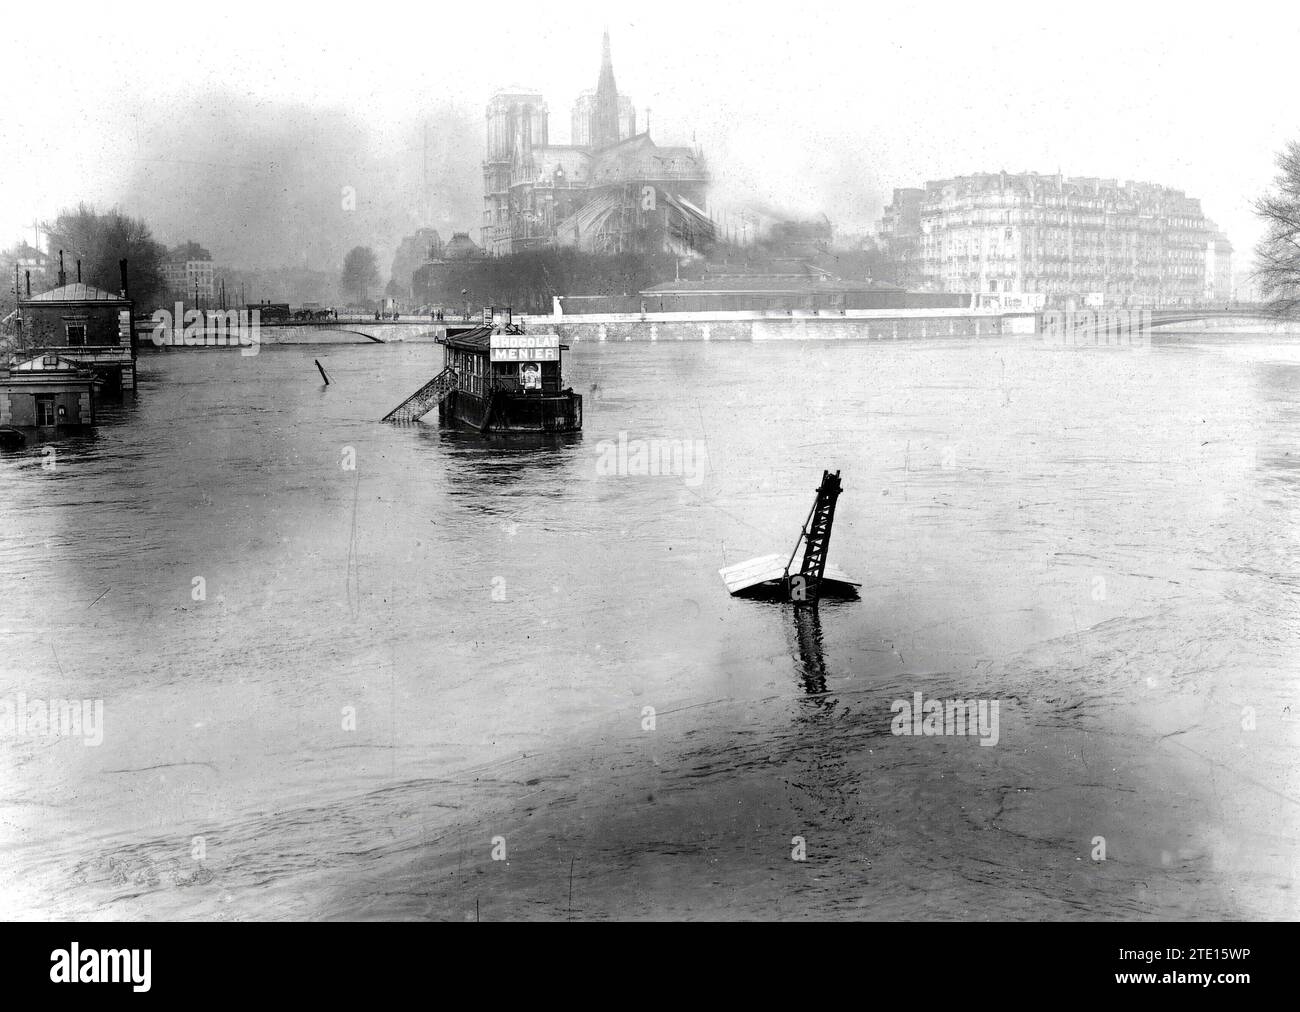 01/31/1913. L'inondation de la Seine à Paris. Aspect de la rivière depuis le pont de l'Archevêché. Au premier plan, vous pouvez voir l'extrémité supérieure d'une grue qui a disparu sous l'eau. Crédit : Album / Archivo ABC / M. Branger Banque D'Images